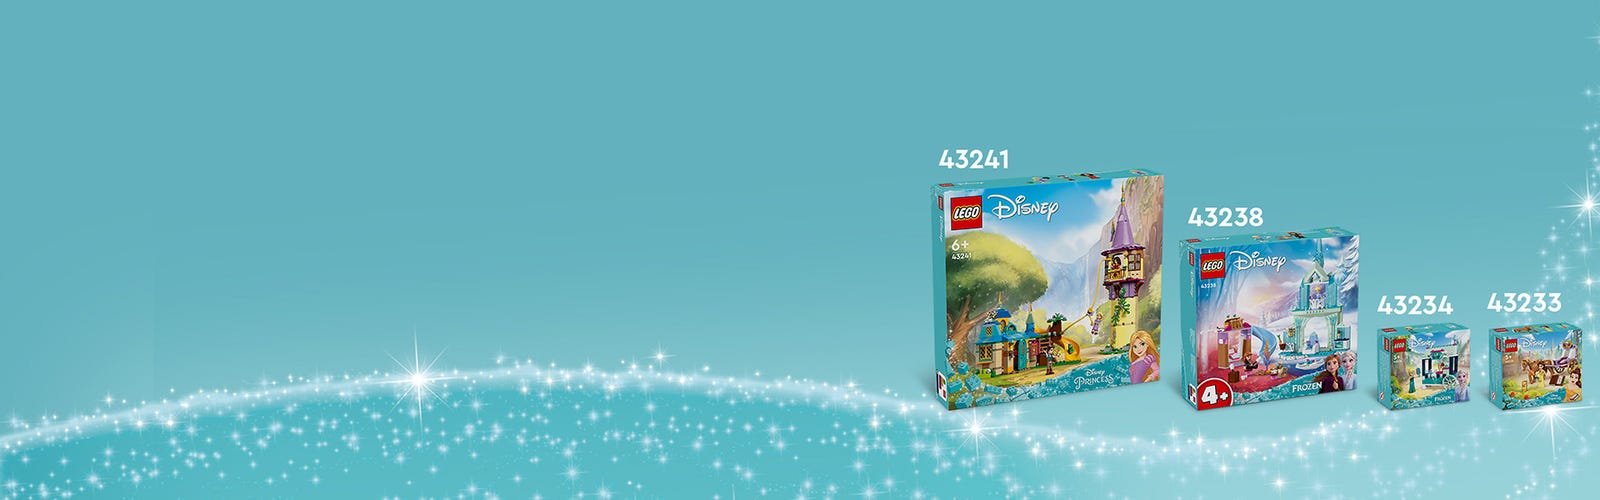 LEGO®Princesas: Torre de Rapunzel y El Patito Acurrucado - LEGO